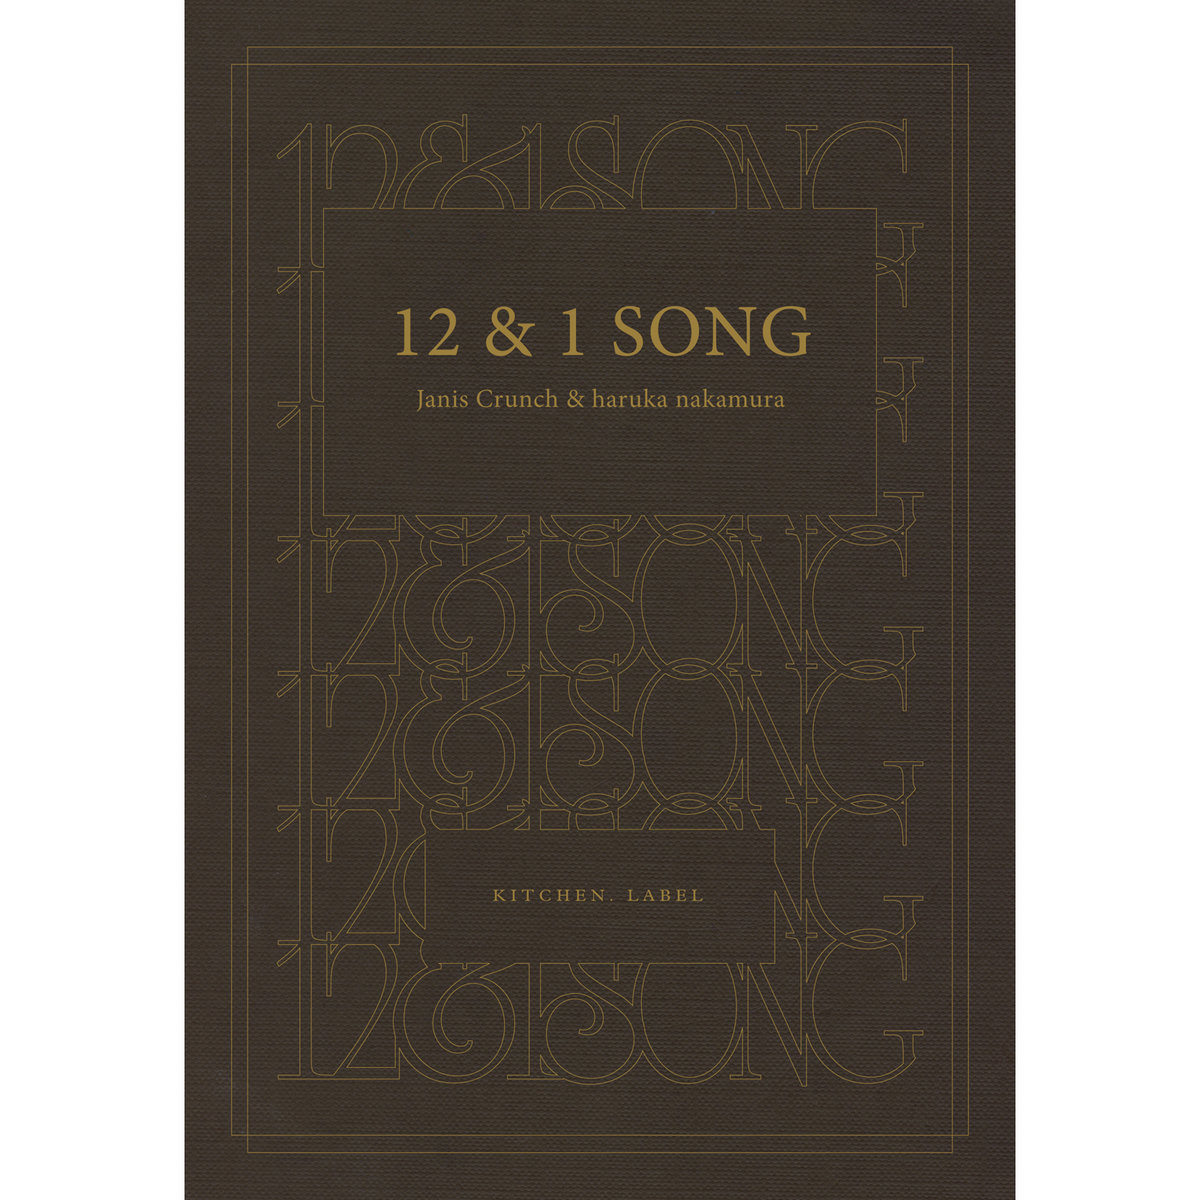 12 & 1 SONG | Janis Crunch & haruka nakamura | KITCHEN. LABEL